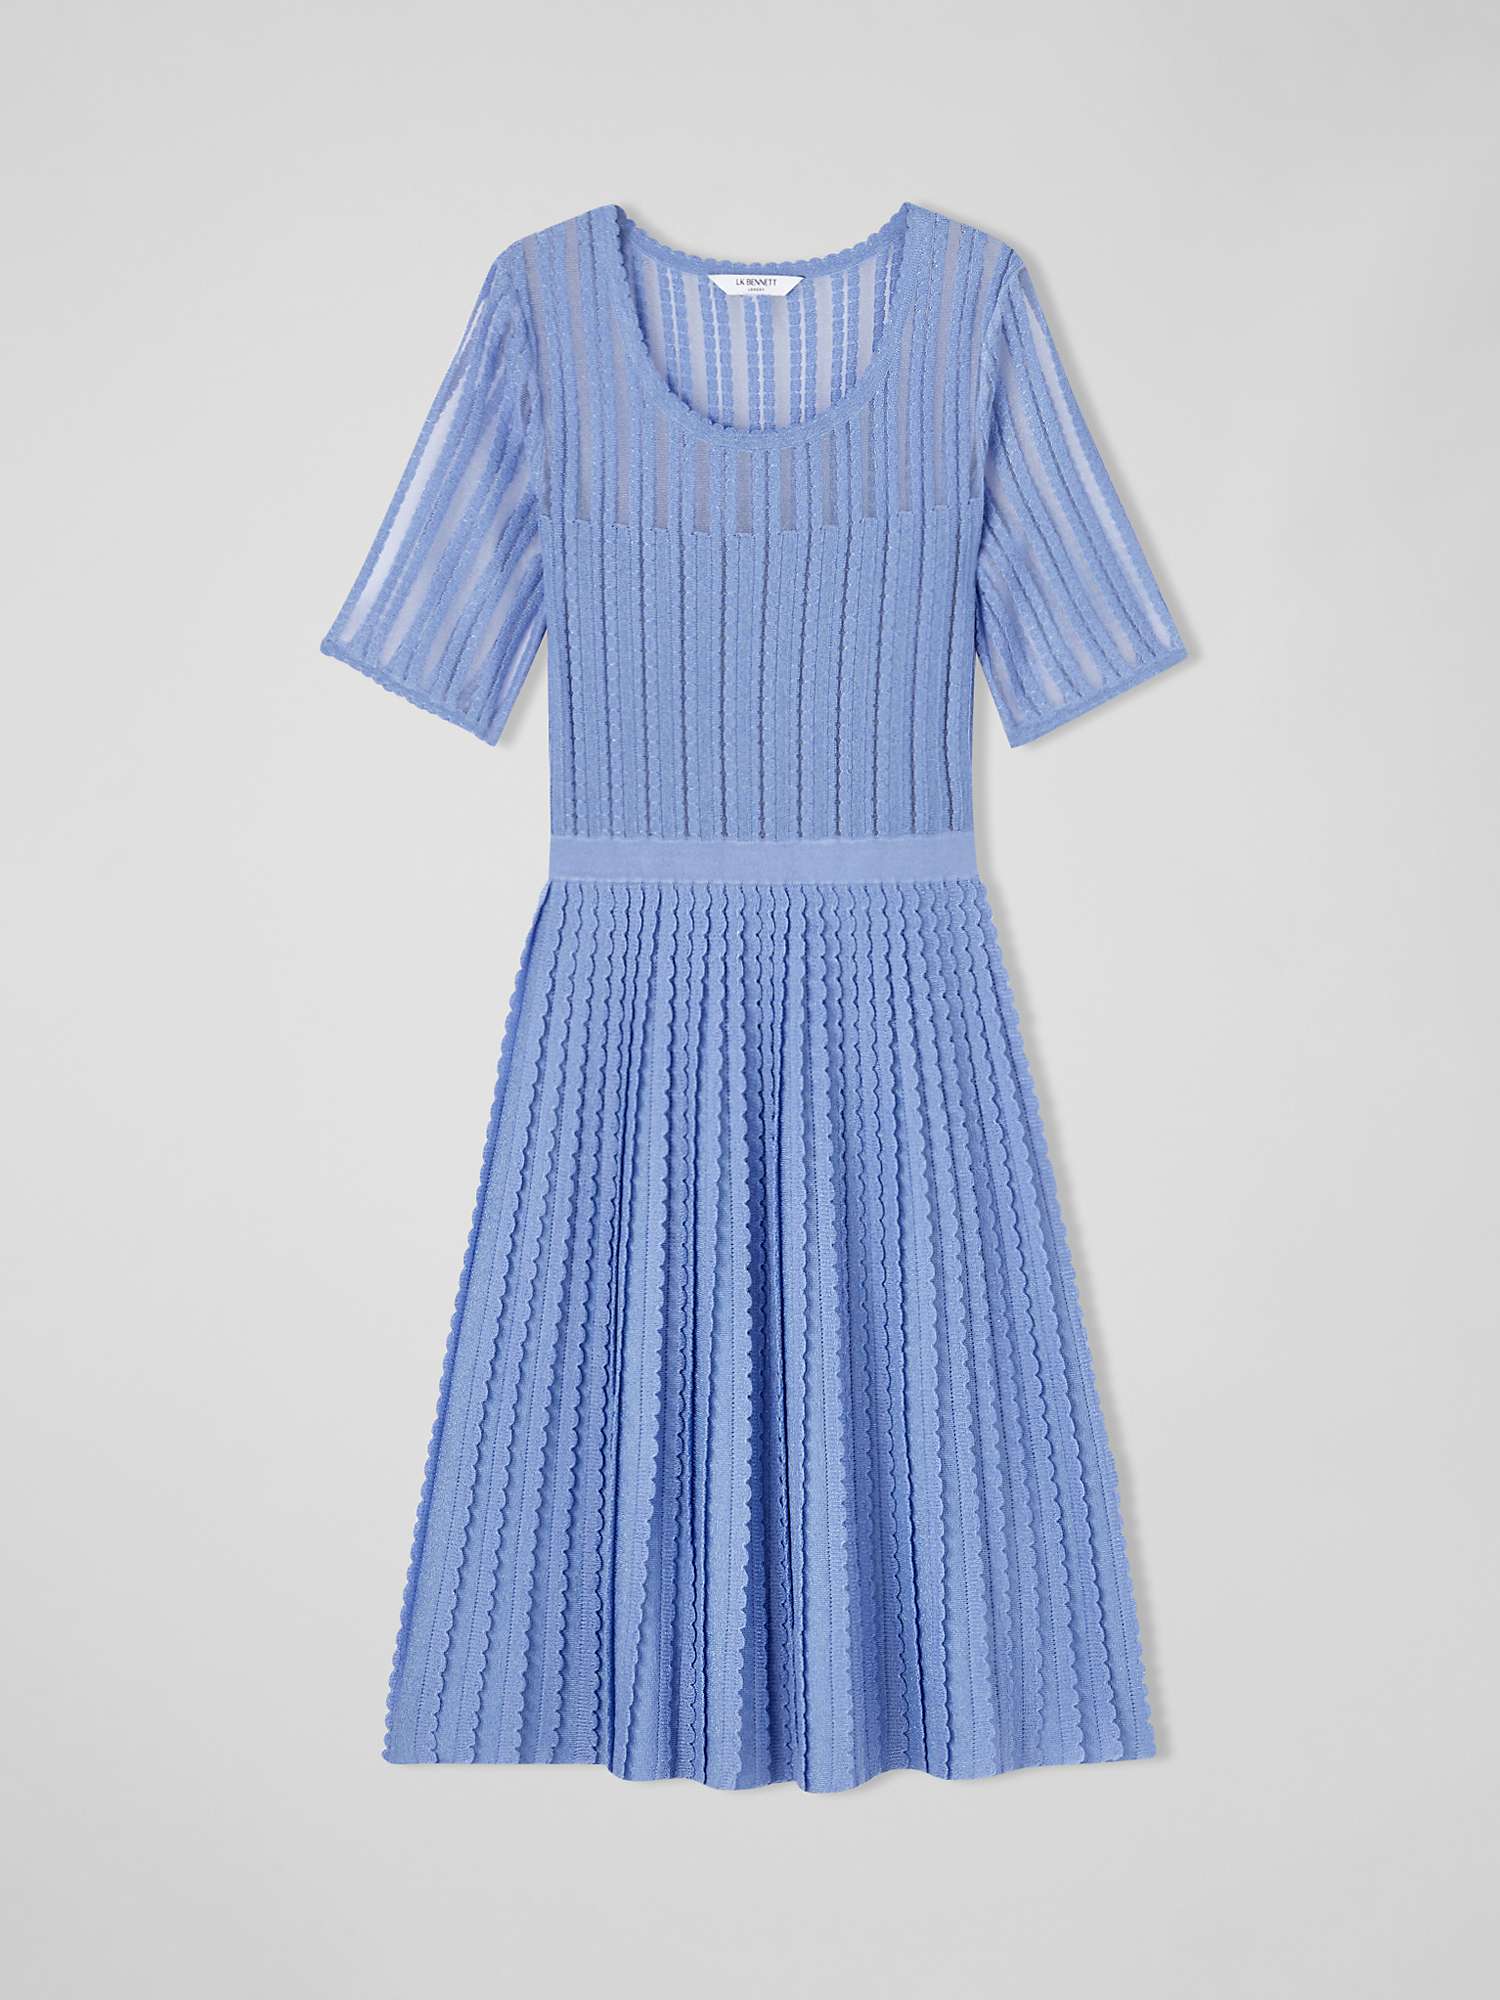 L.K.Bennett Anna Textured Dress, Hyacinth at John Lewis & Partners